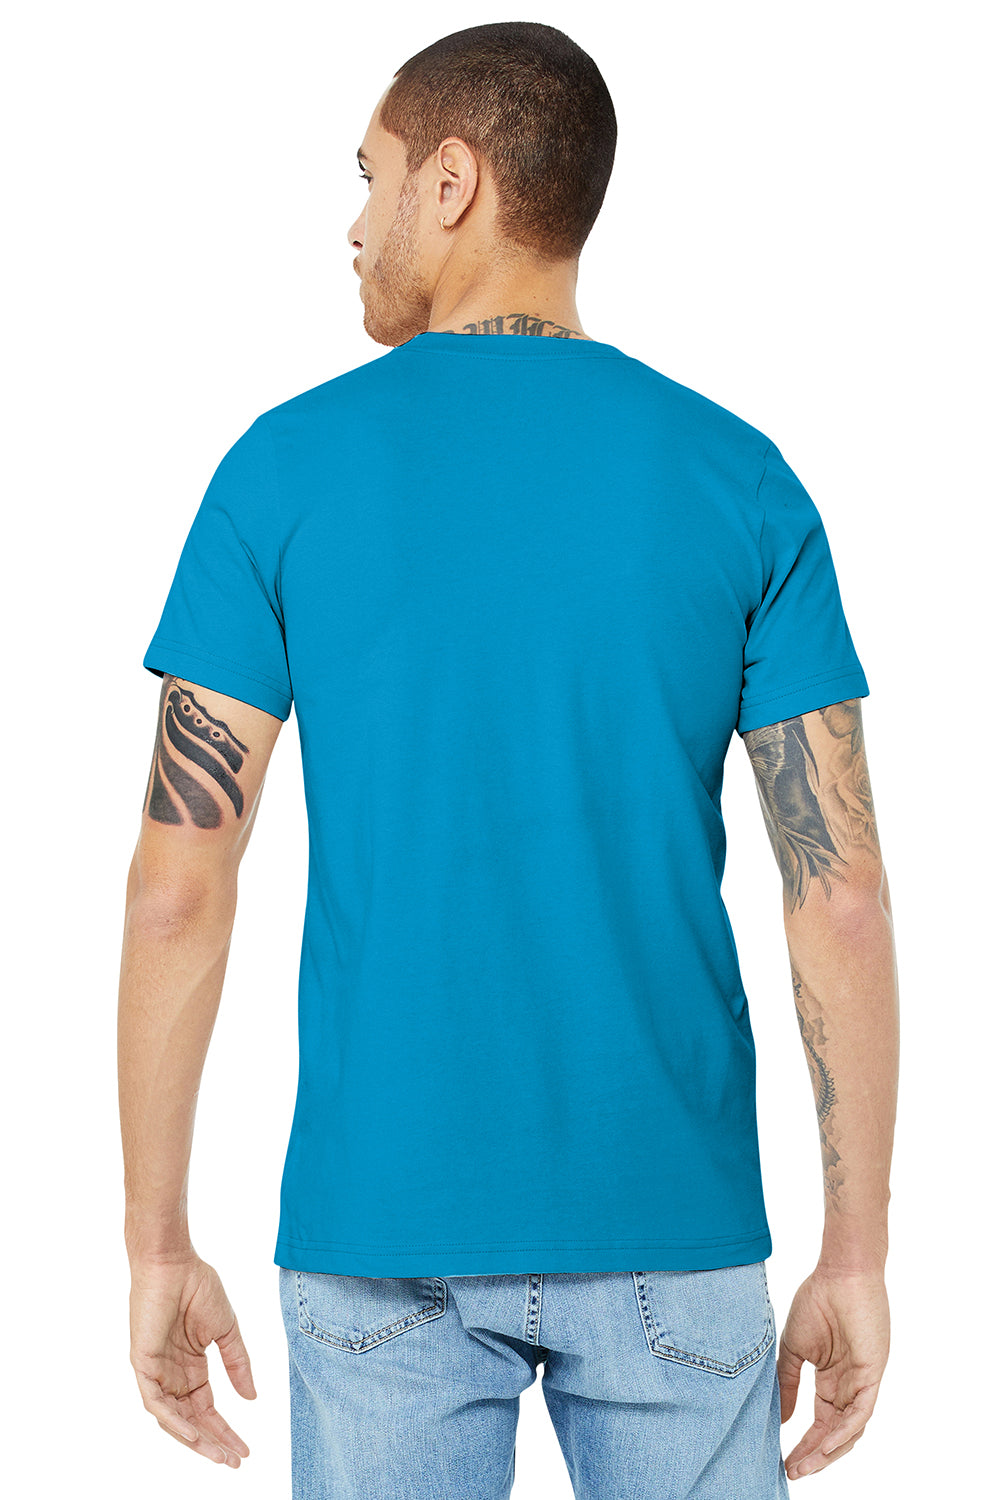 Bella + Canvas BC3001/3001C Mens Jersey Short Sleeve Crewneck T-Shirt Aqua Blue Model Back